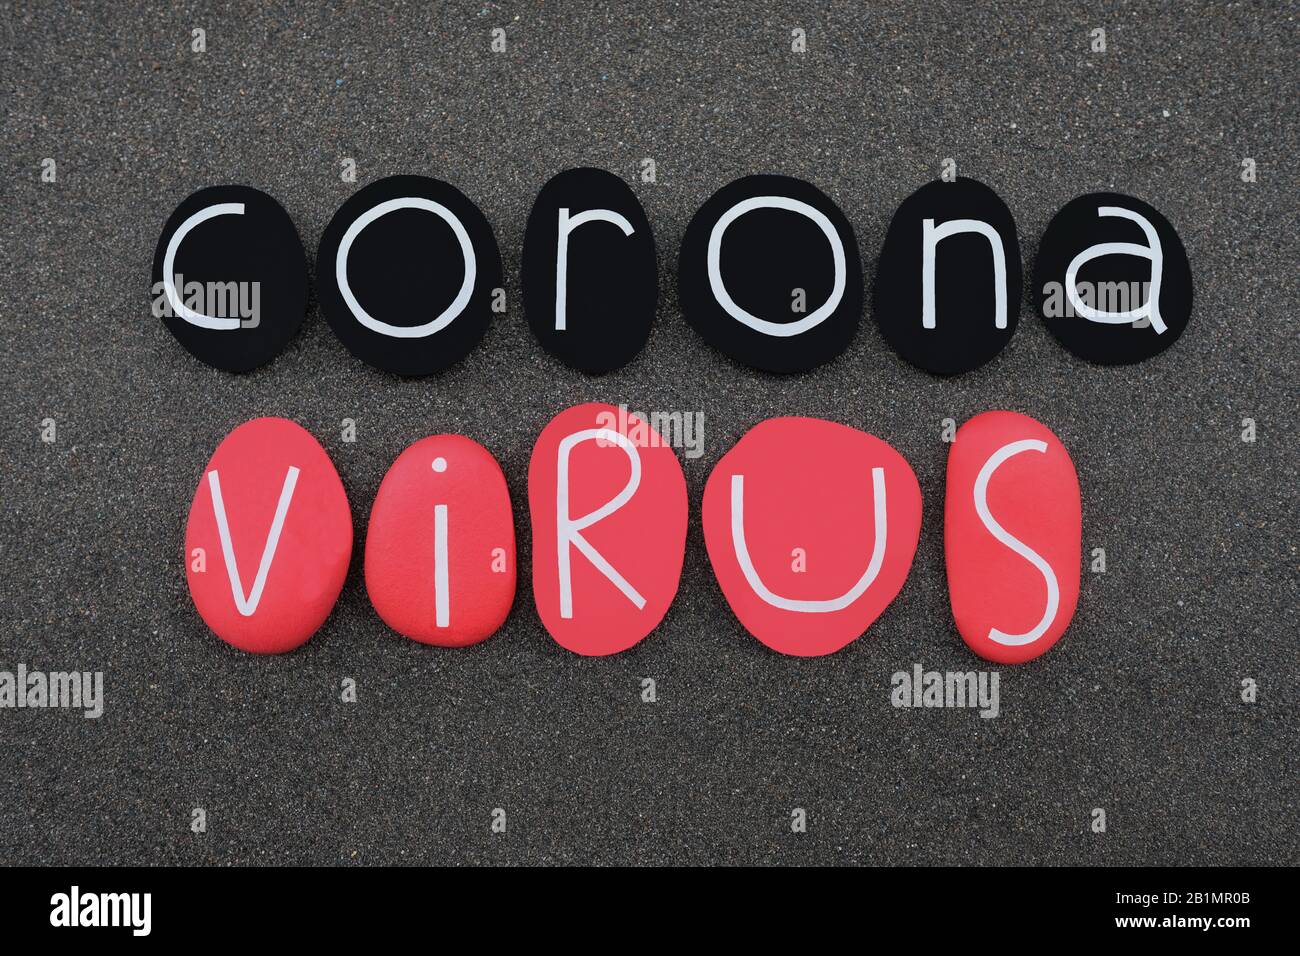 Coronavirus, Virus, das schwere Lungenerkrankung verursachte, die in Wuhan, China, begann, Text, der mit schwarz-rot gefärbten Steinbuchstaben über schwarzem volcani bestand Stockfoto